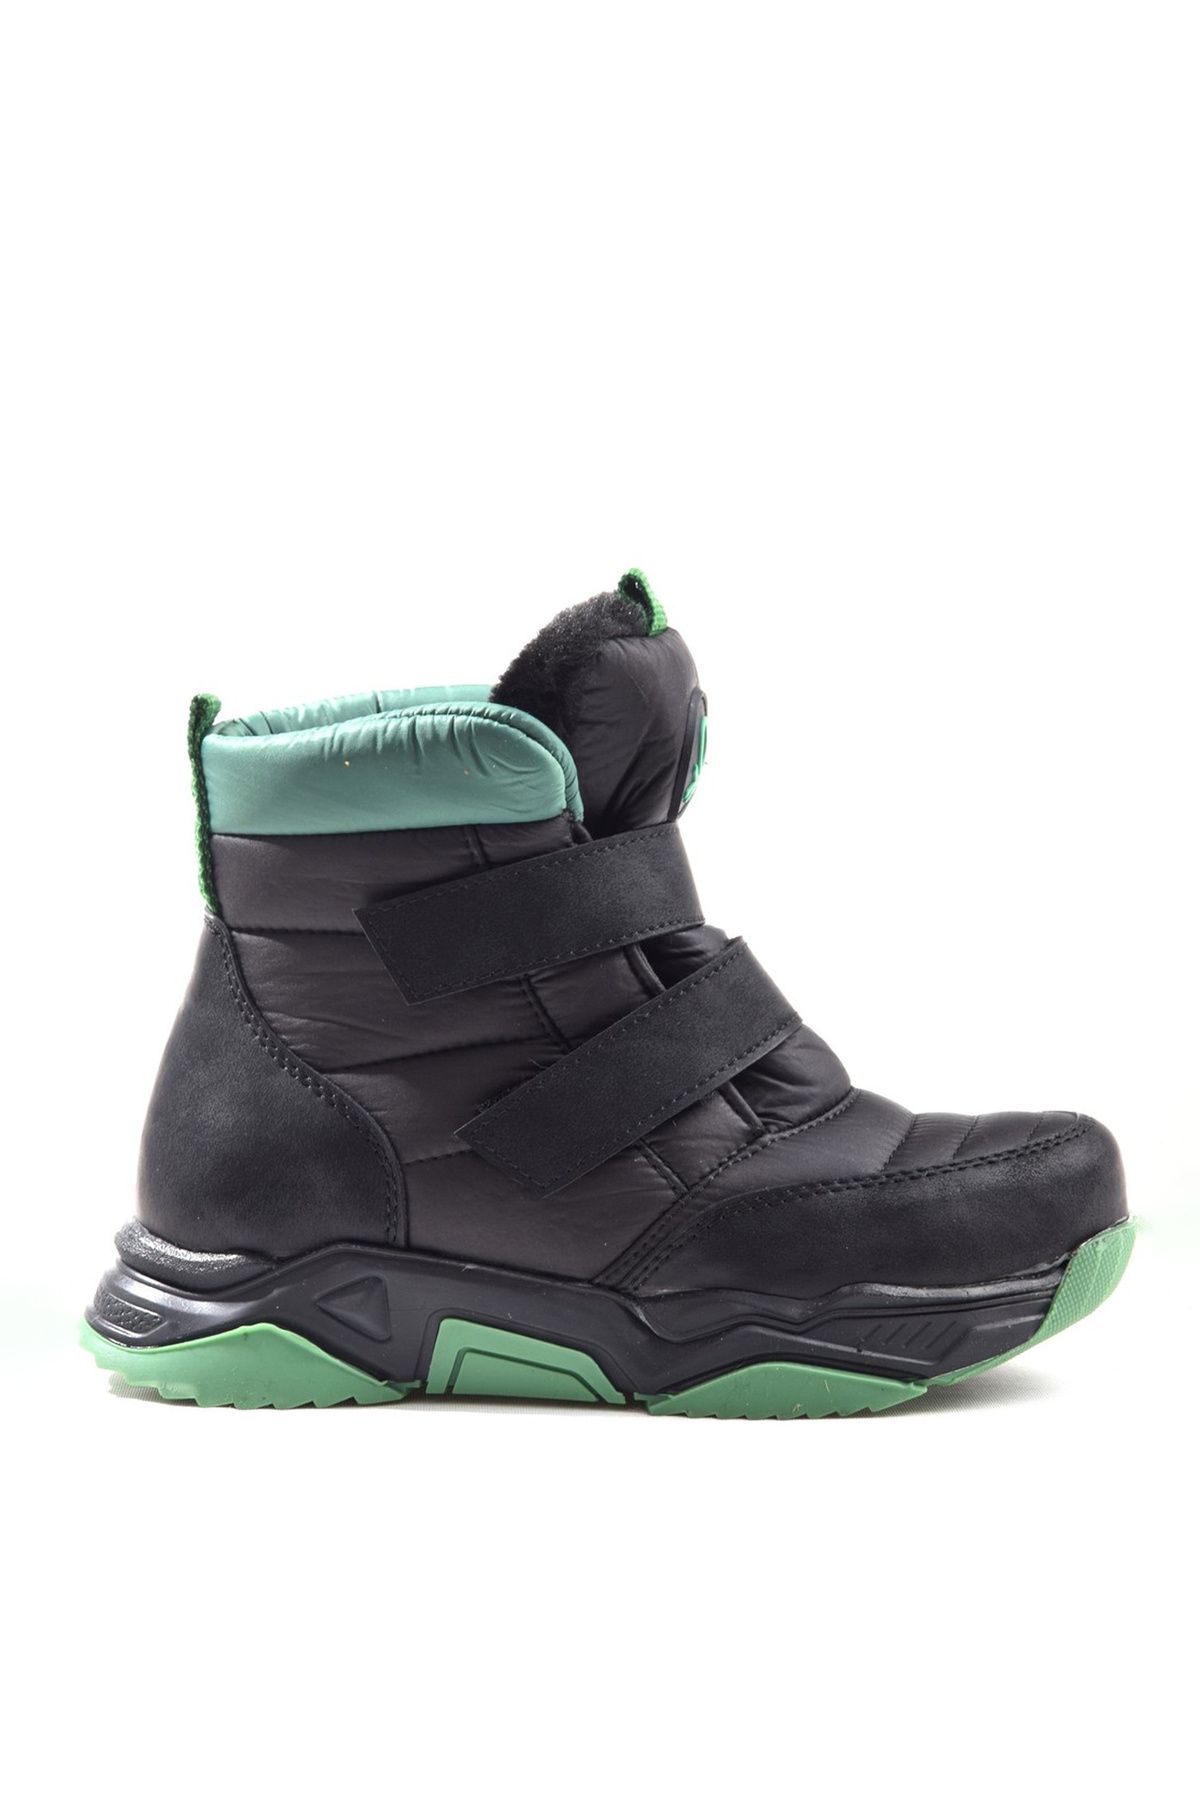 Benetton Siyah - Yeşil Erkek Çocuk Günlük Ayakkabı